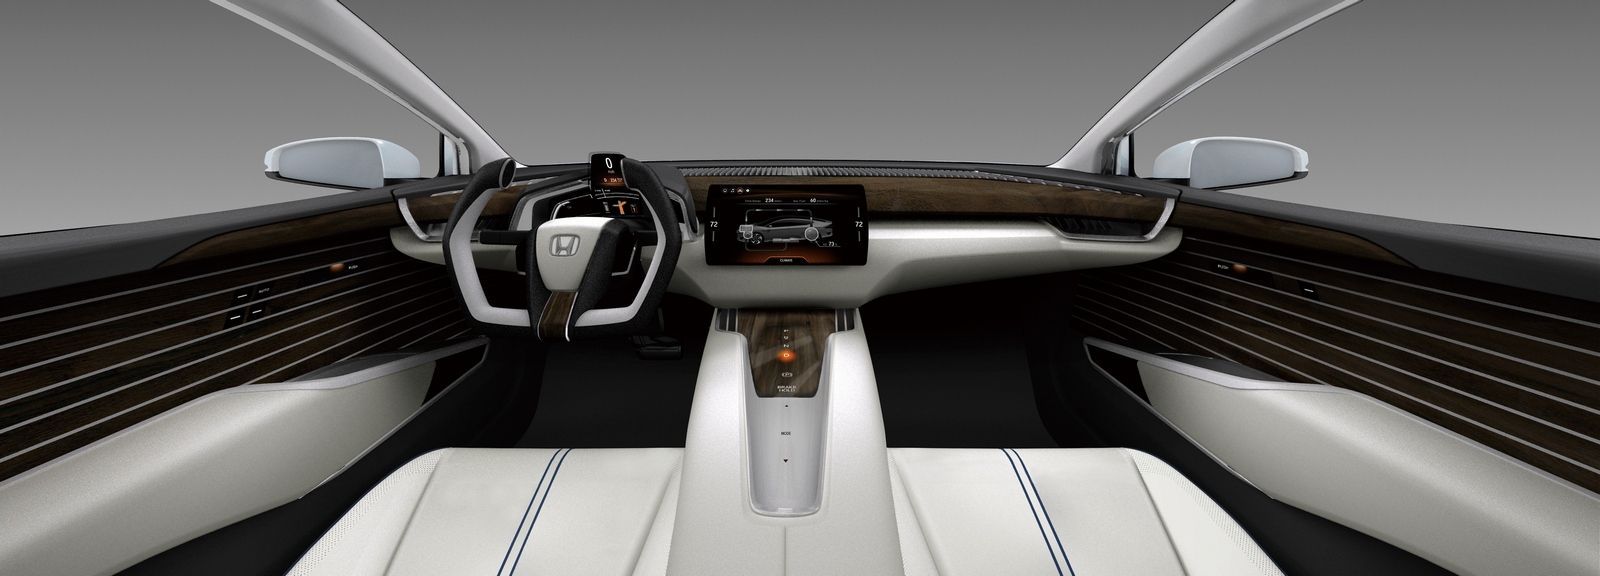 Honda FCV koncept - palubka